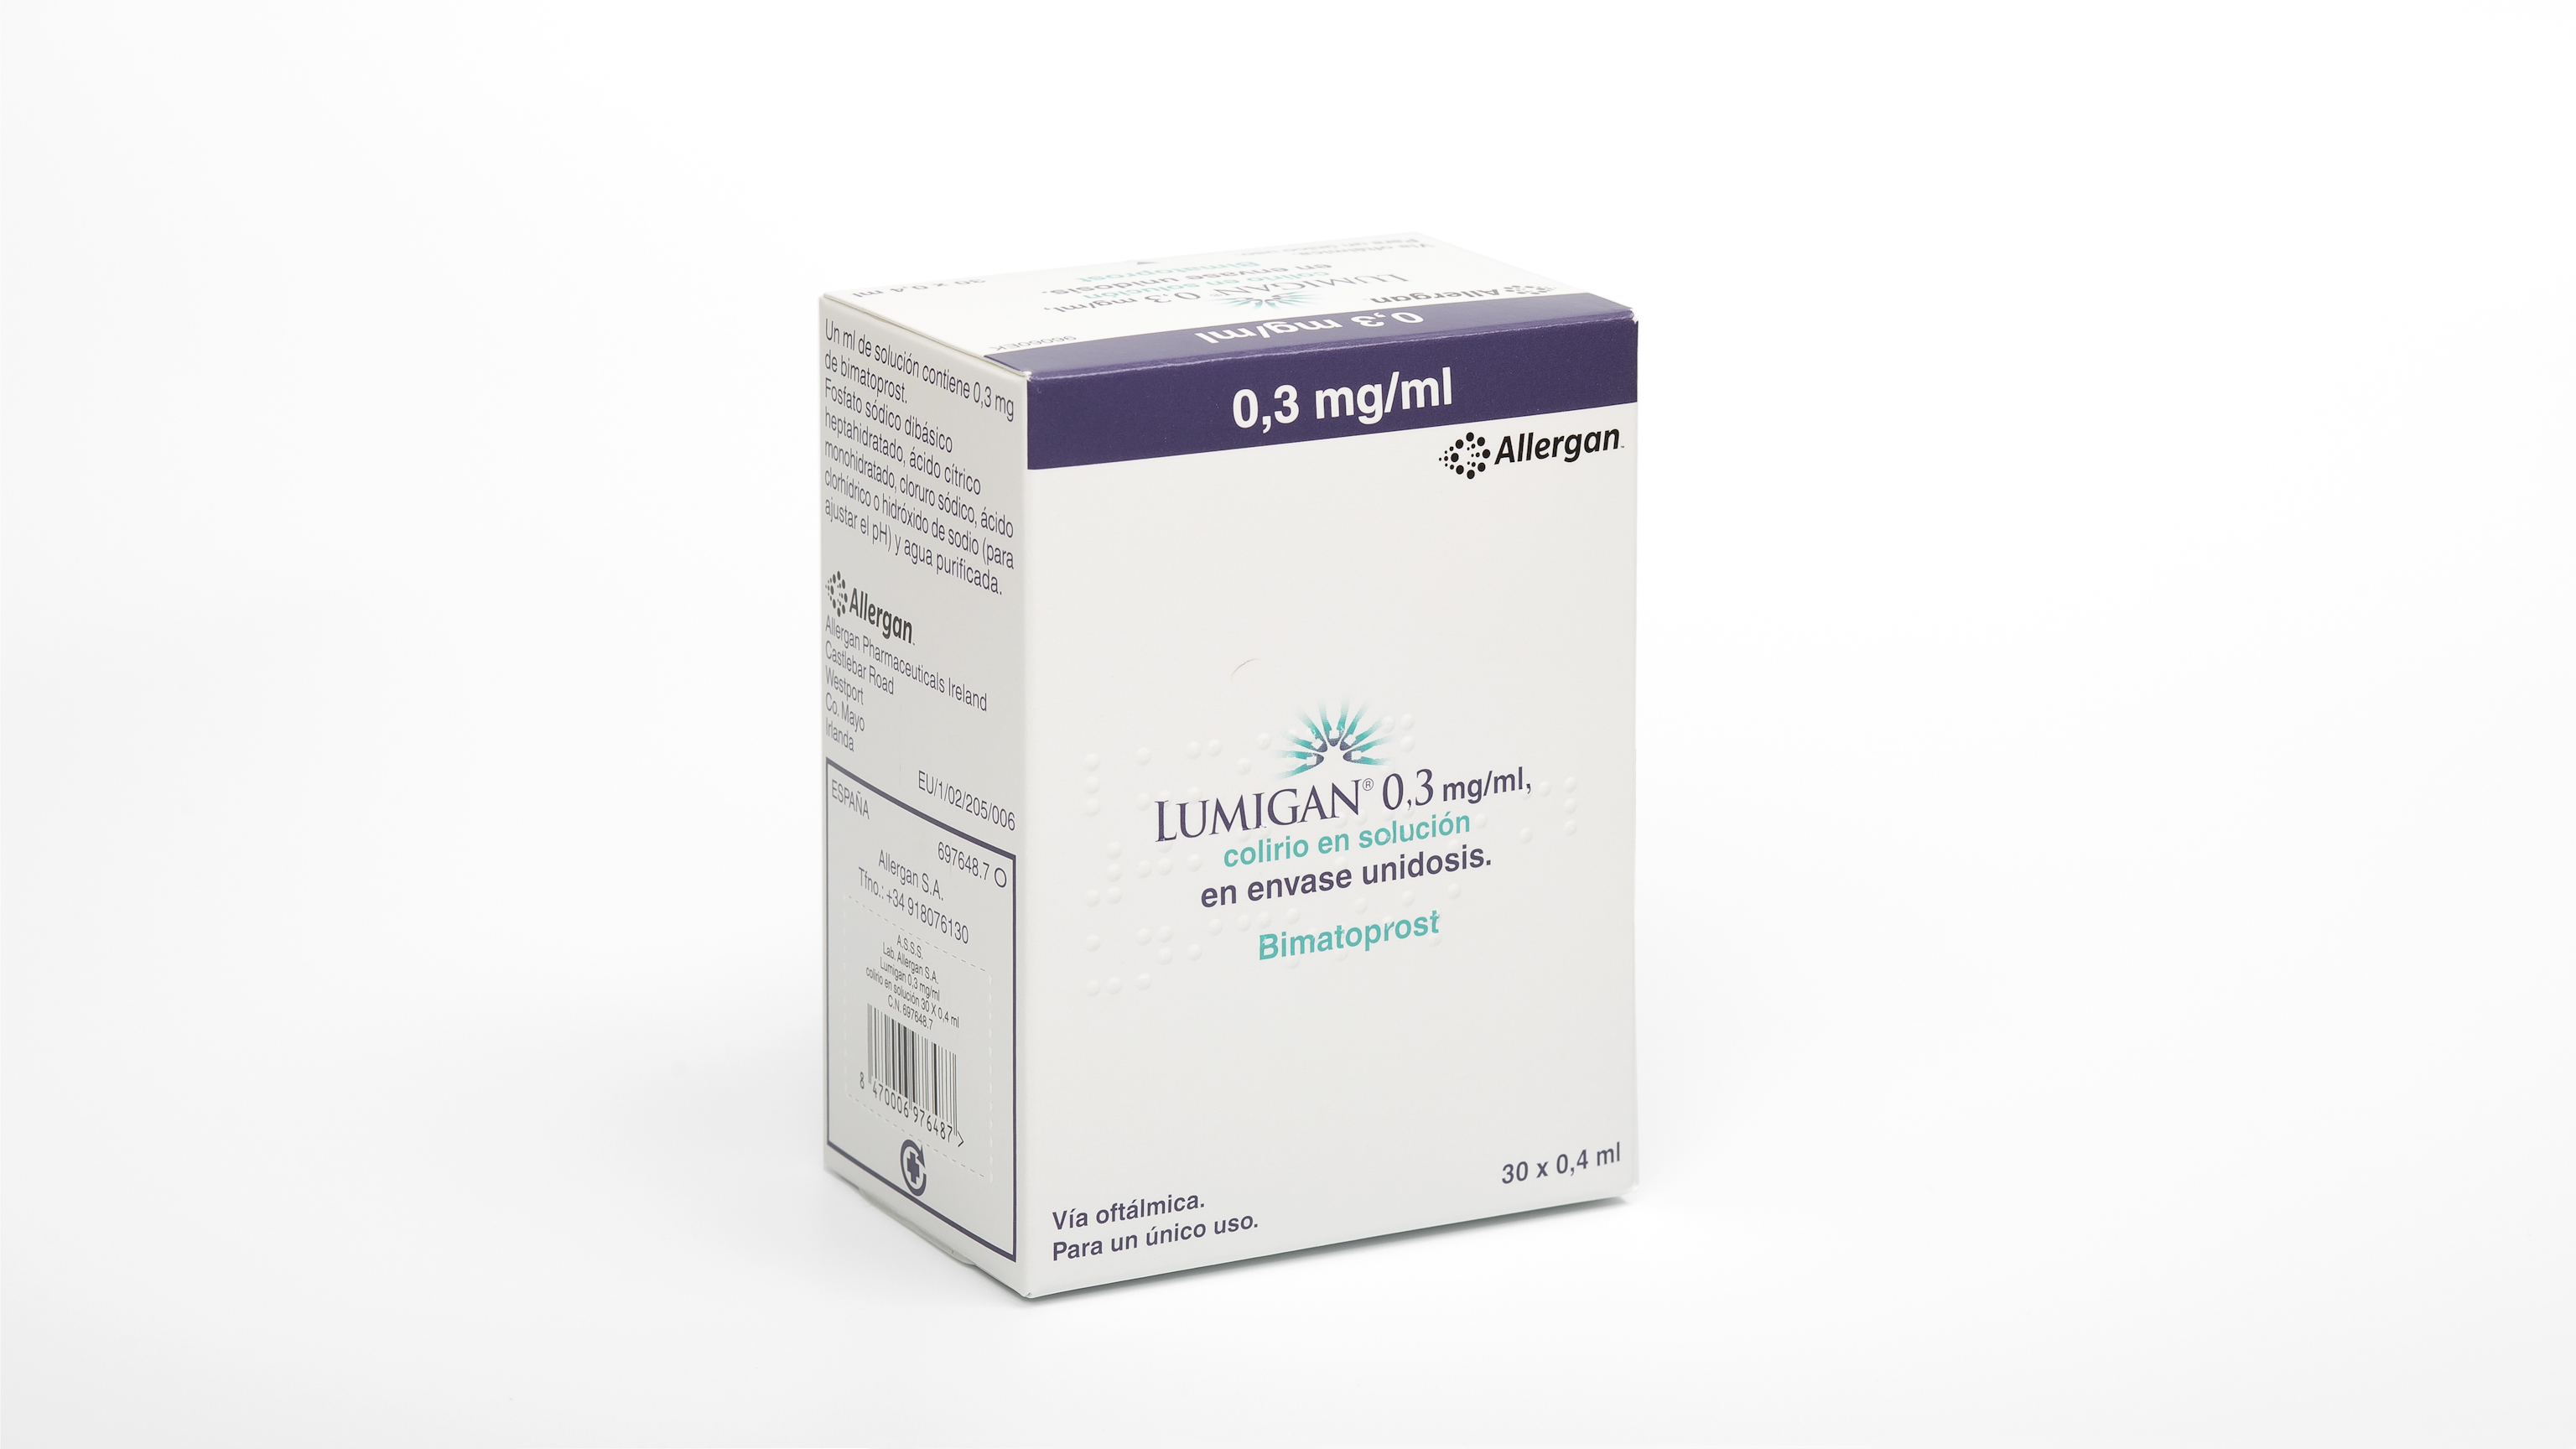 LUMIGAN 0,3 mg/ml COLIRIO EN SOLUCION 30 MONODOSIS 0,4 ml - Farmacéuticos